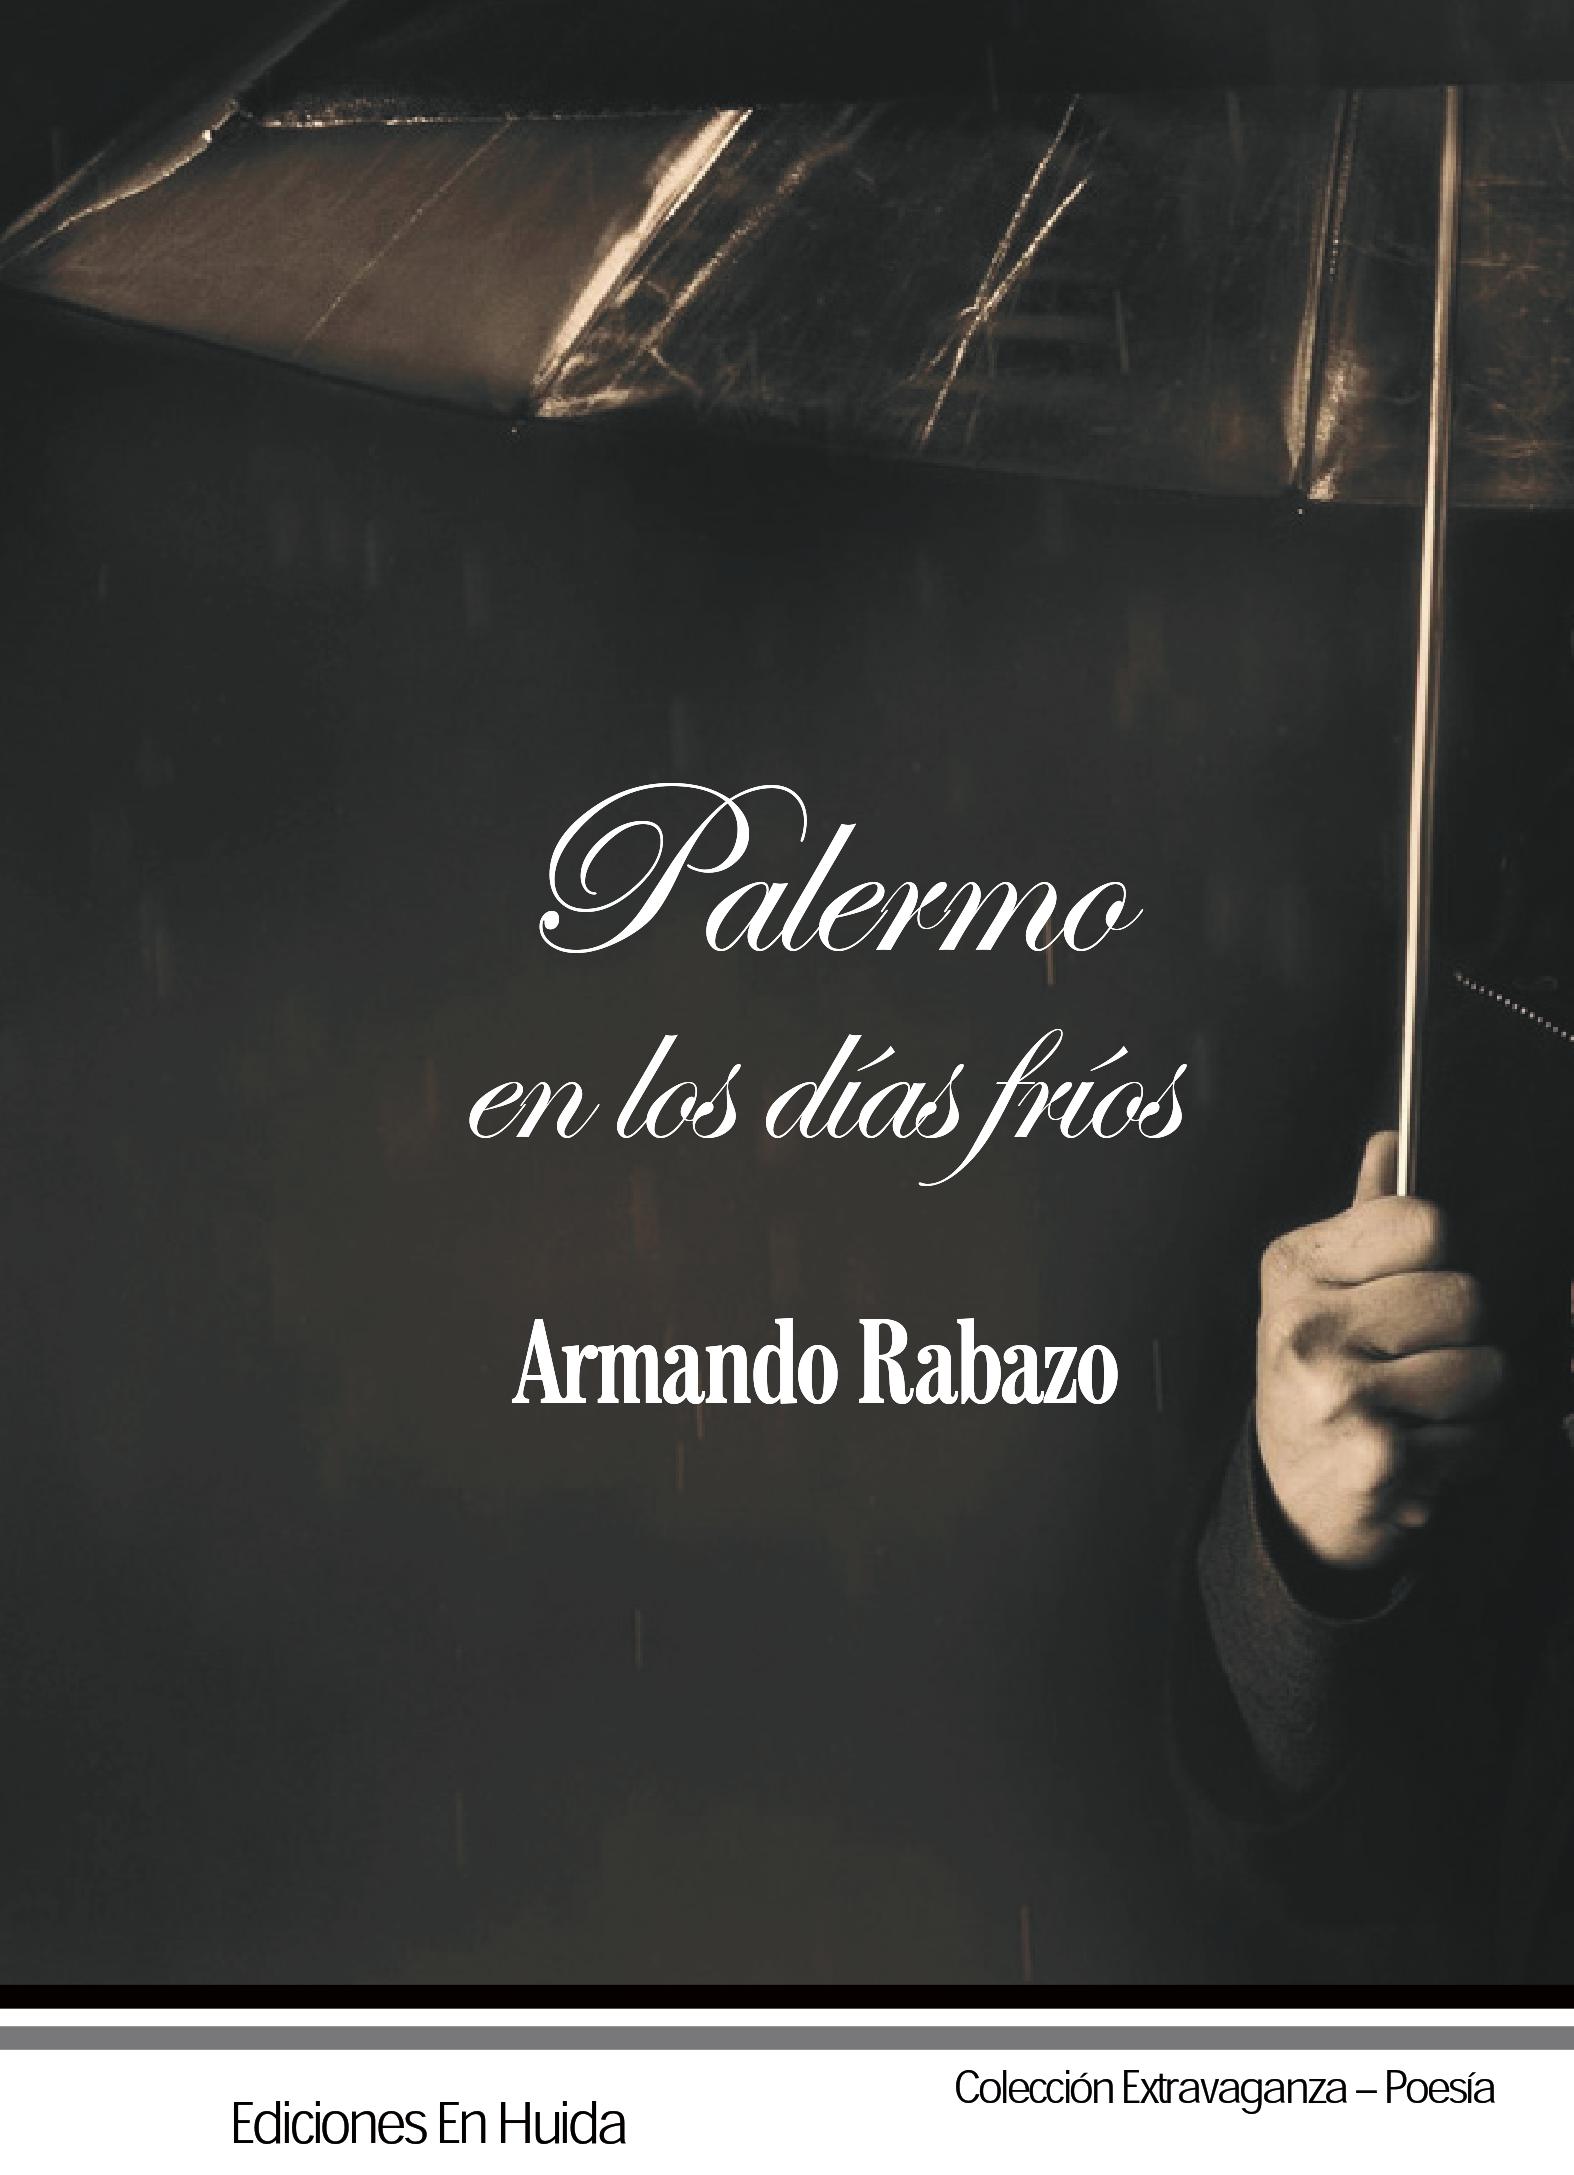 ARMANDO RABAZO, Palermo en los días fríos (Ediciones en huida)